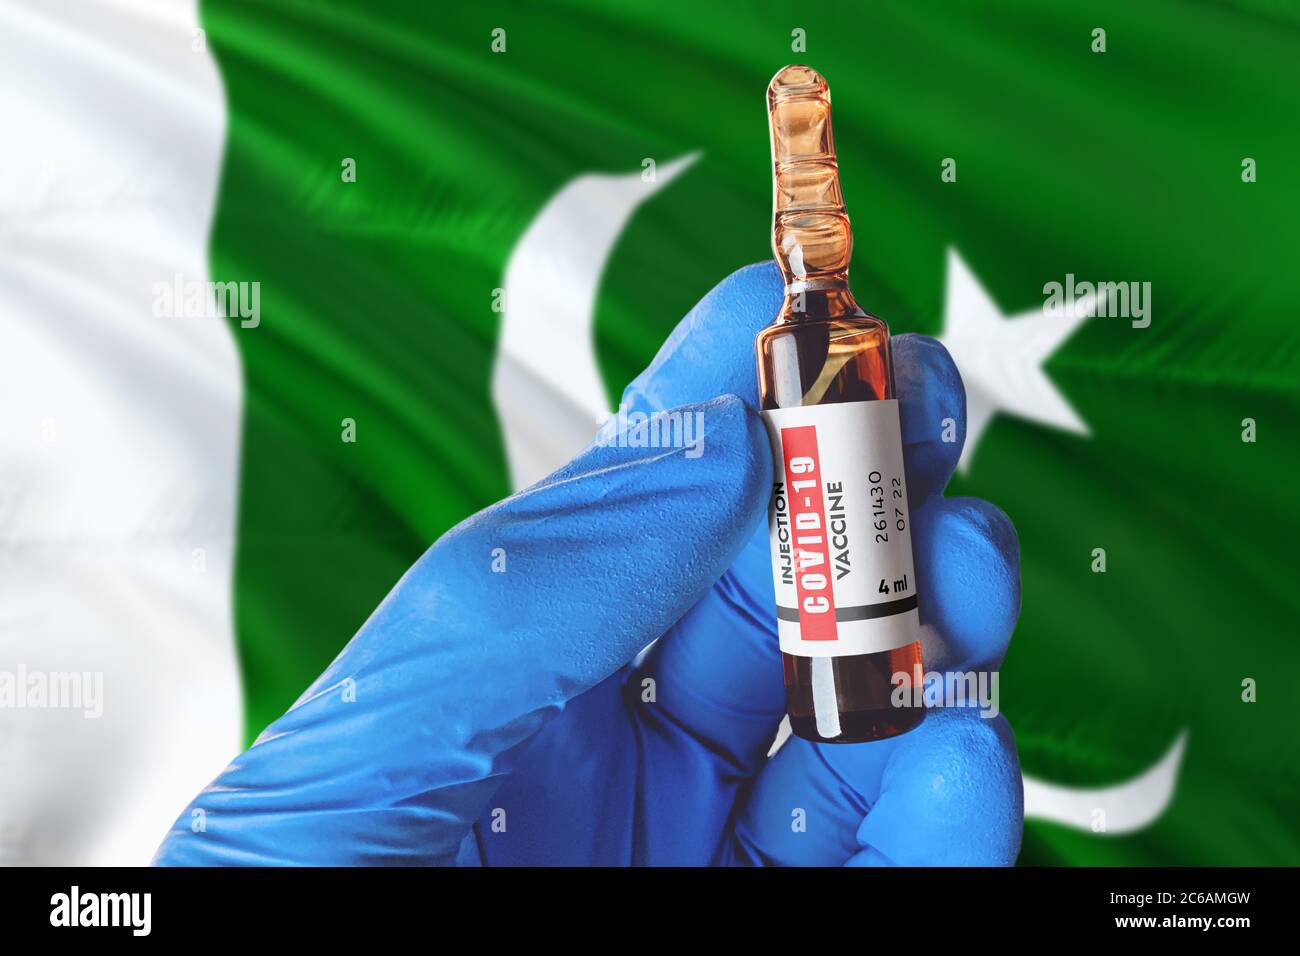 Pakistanische Flagge mit Coronavirus Covid-19 Konzept. Arzt mit blauen Schutz medizinische Handschuhe hält eine Impfstoffflasche. Coronavirus covid 19 Impfstoff resea Stockfoto